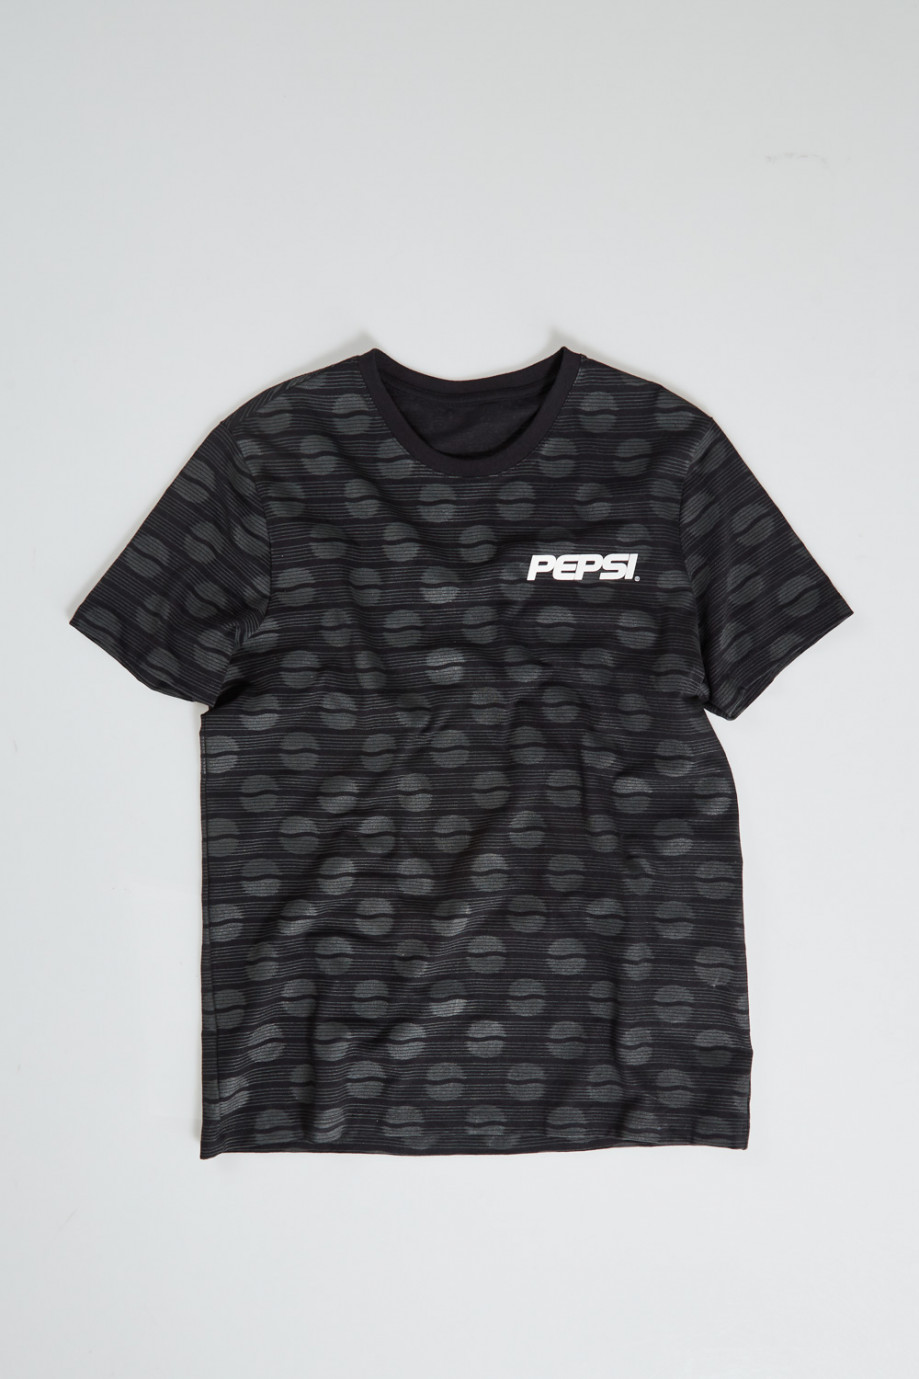 Camiseta manga corta, estampada de Pepsi.